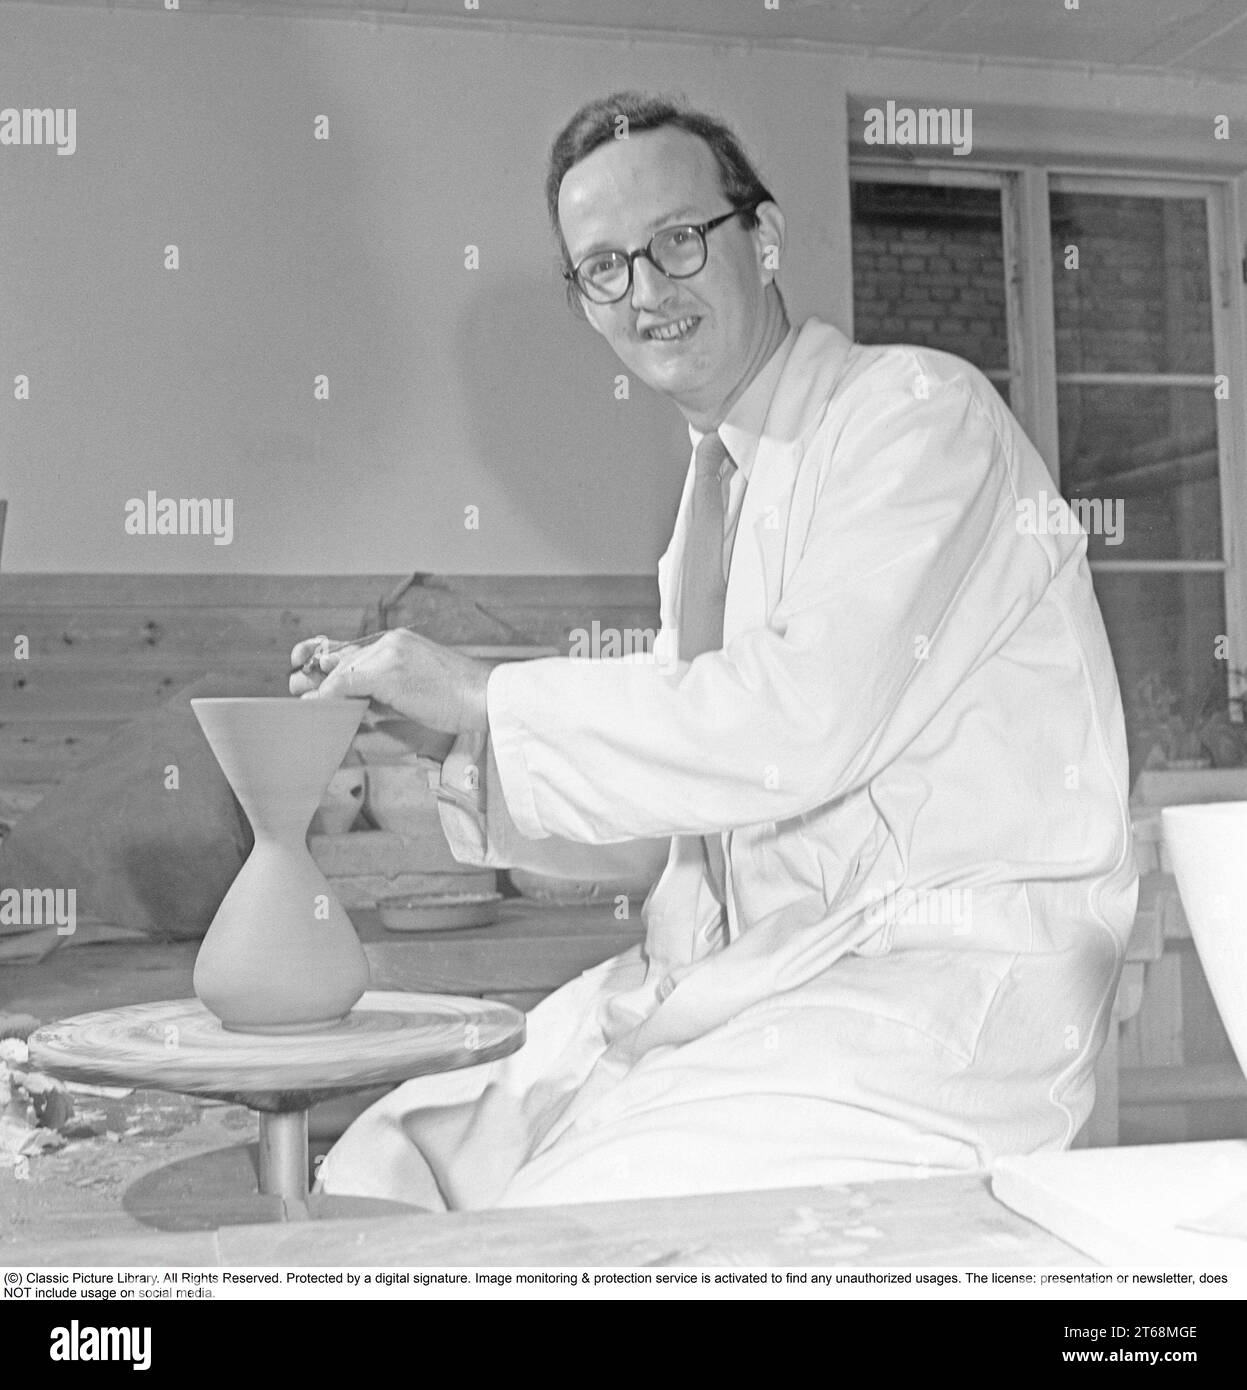 Stig Lindberg (Umeå, 17 agosto 1916 – San felice Circeo, 7 aprile 1982) è stato un designer svedese di ceramica, vetro, tessile, industriale, pittore, e illustratore. Uno dei più importanti designer svedesi del dopoguerra, Lindberg creò stravaganti ceramiche da studio e graziose linee di stoviglie durante una lunga carriera nella fabbrica di ceramica Gustavsberg. Stig Lindberg ha studiato pittura presso l'University College of Arts, Crafts and Design. Nel 1937, andò a lavorare a Gustavsberg sotto Wilhelm Kåge. Nel 1949 fu nominato successore di Kåge come direttore artistico. Da questo per Foto Stock